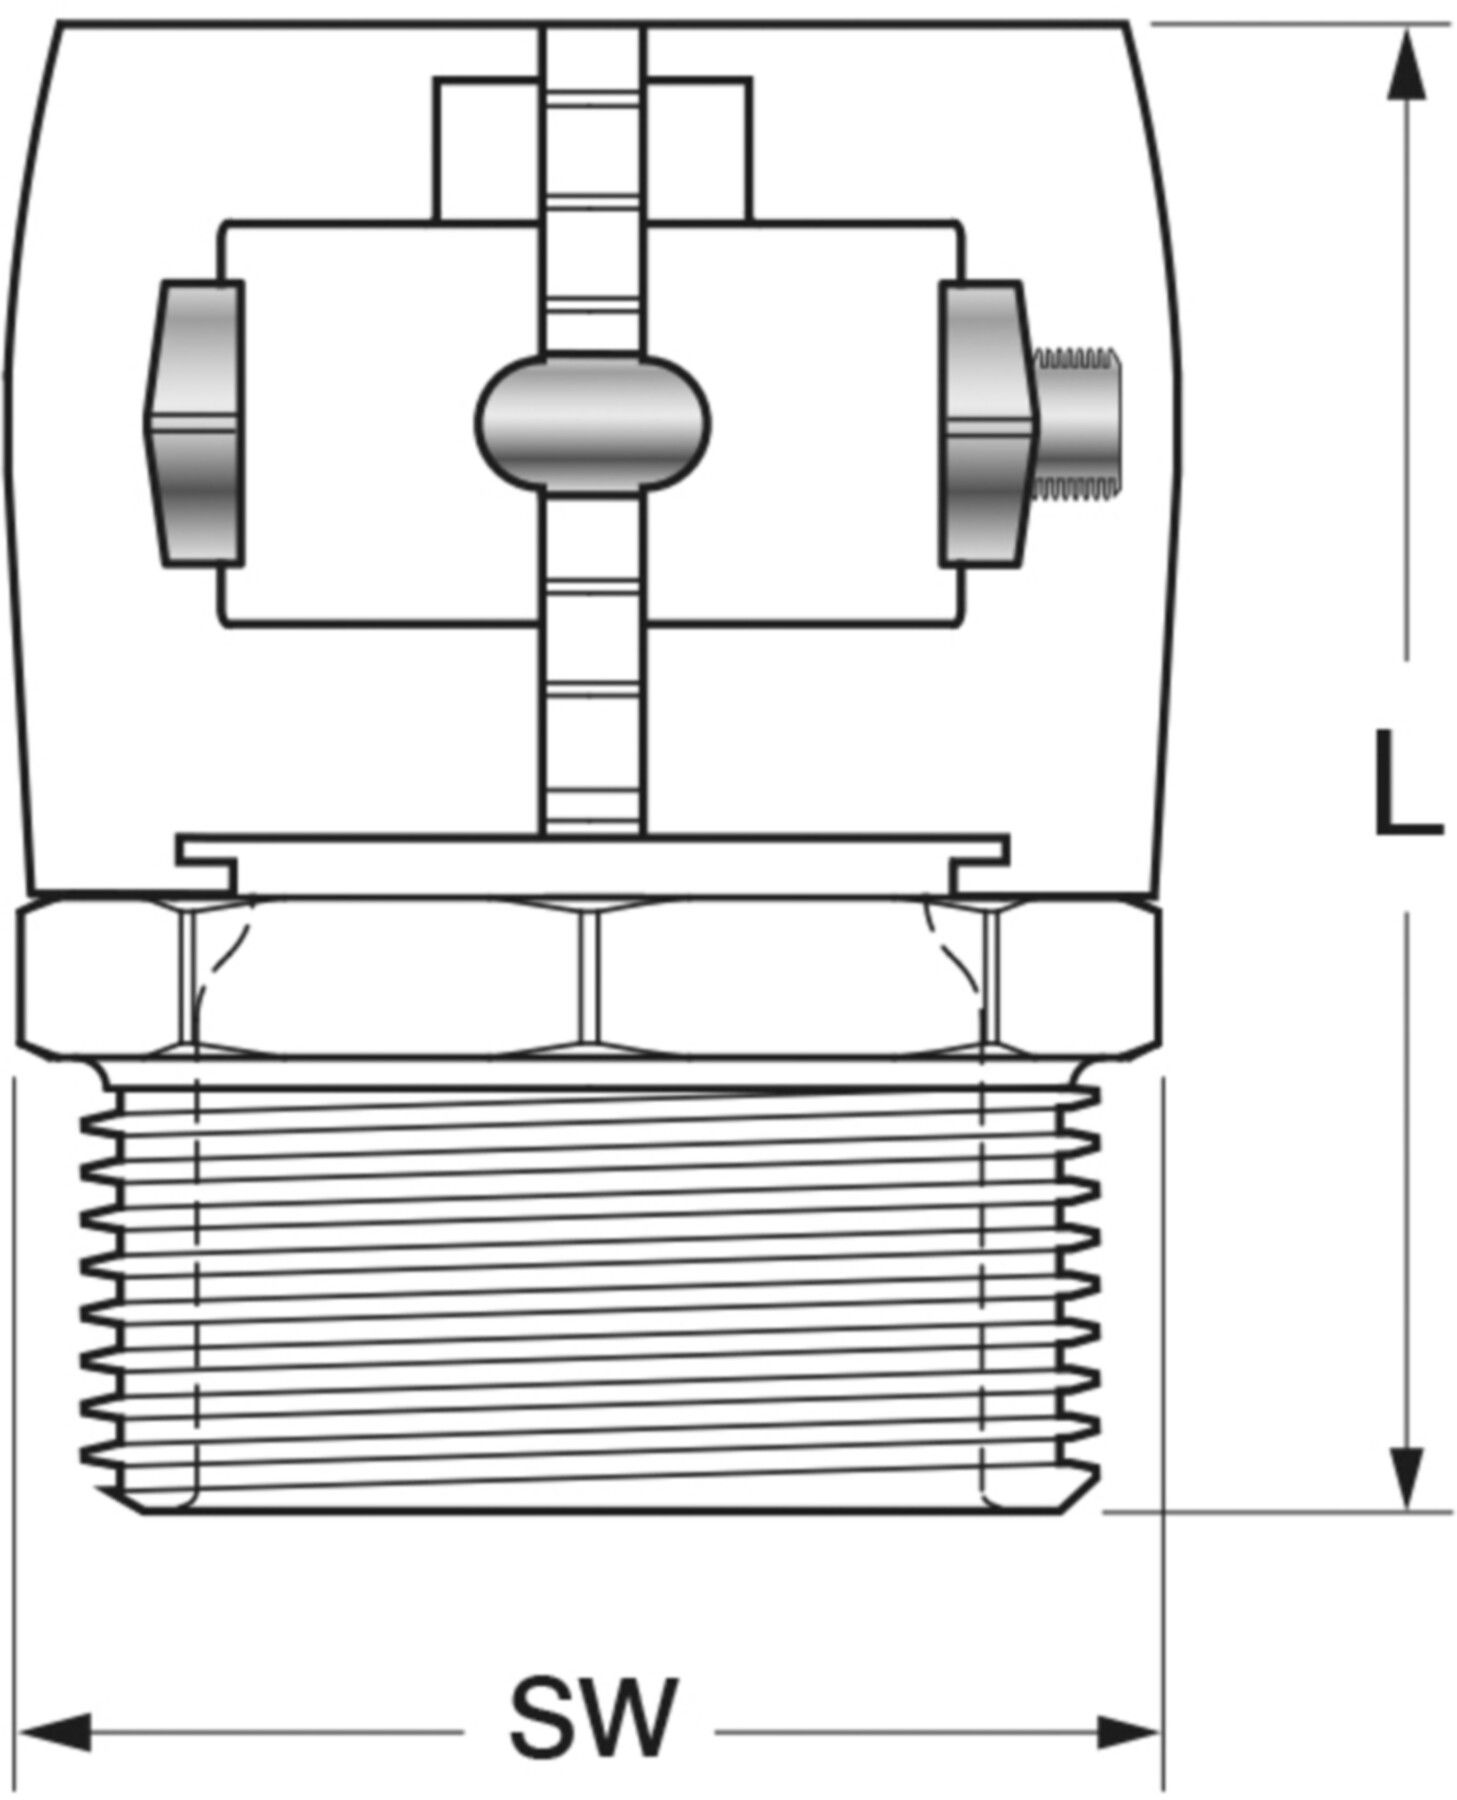 Klemm-Verbindungen mit Aussengewinde Jentro S - 50 11/2" - Isopex Fernwärmeleitung